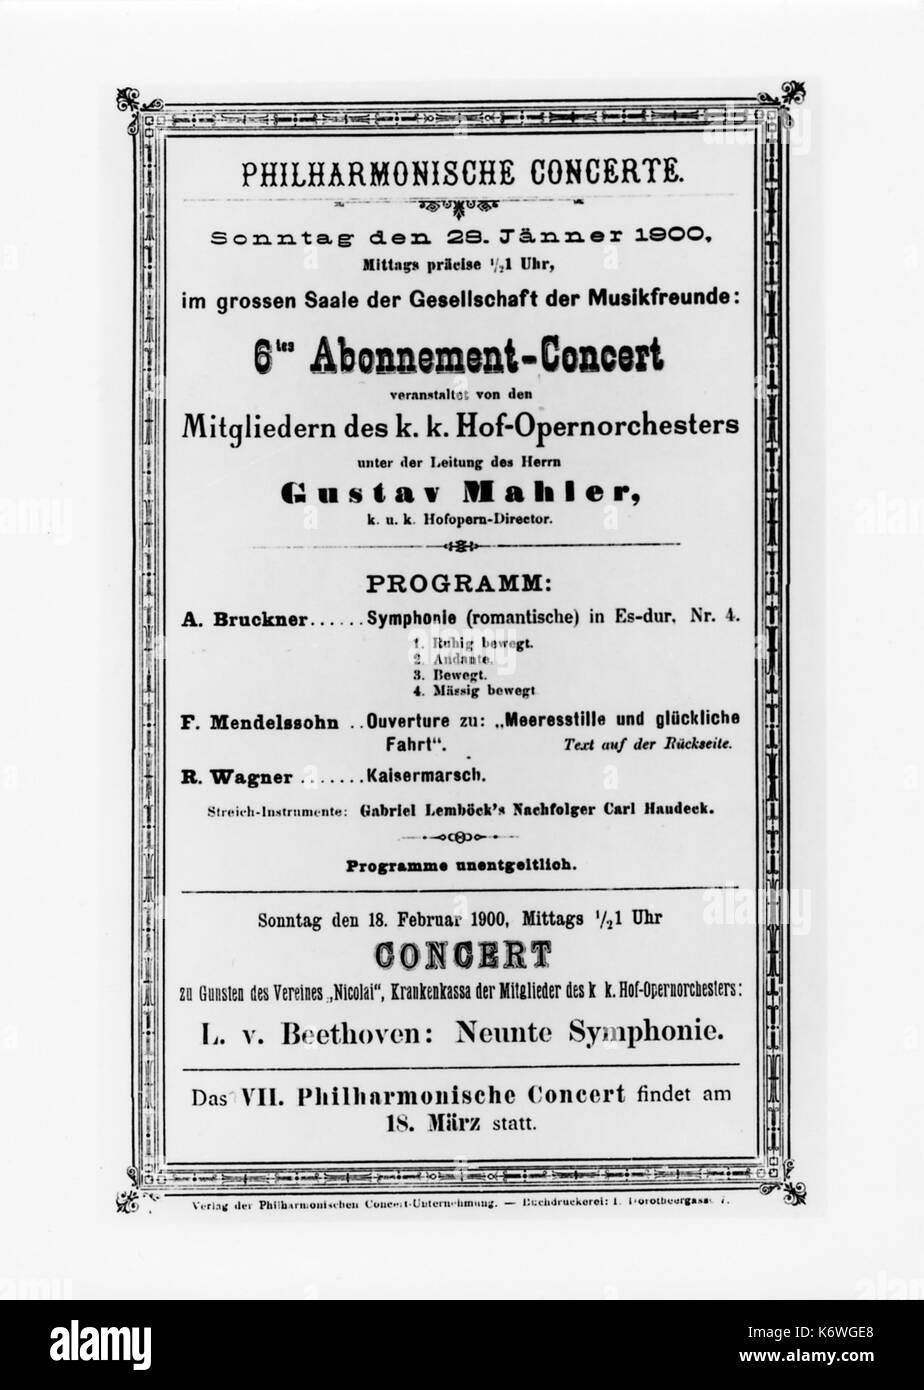 Gustav Mahler - Il programma di concerti, Vienna, 28/1/1900 Concerto di musiche di Bruckner, Mendelssohn & Wagner - condotta da Mahler compositore austriaco, 1860-1911 Foto Stock